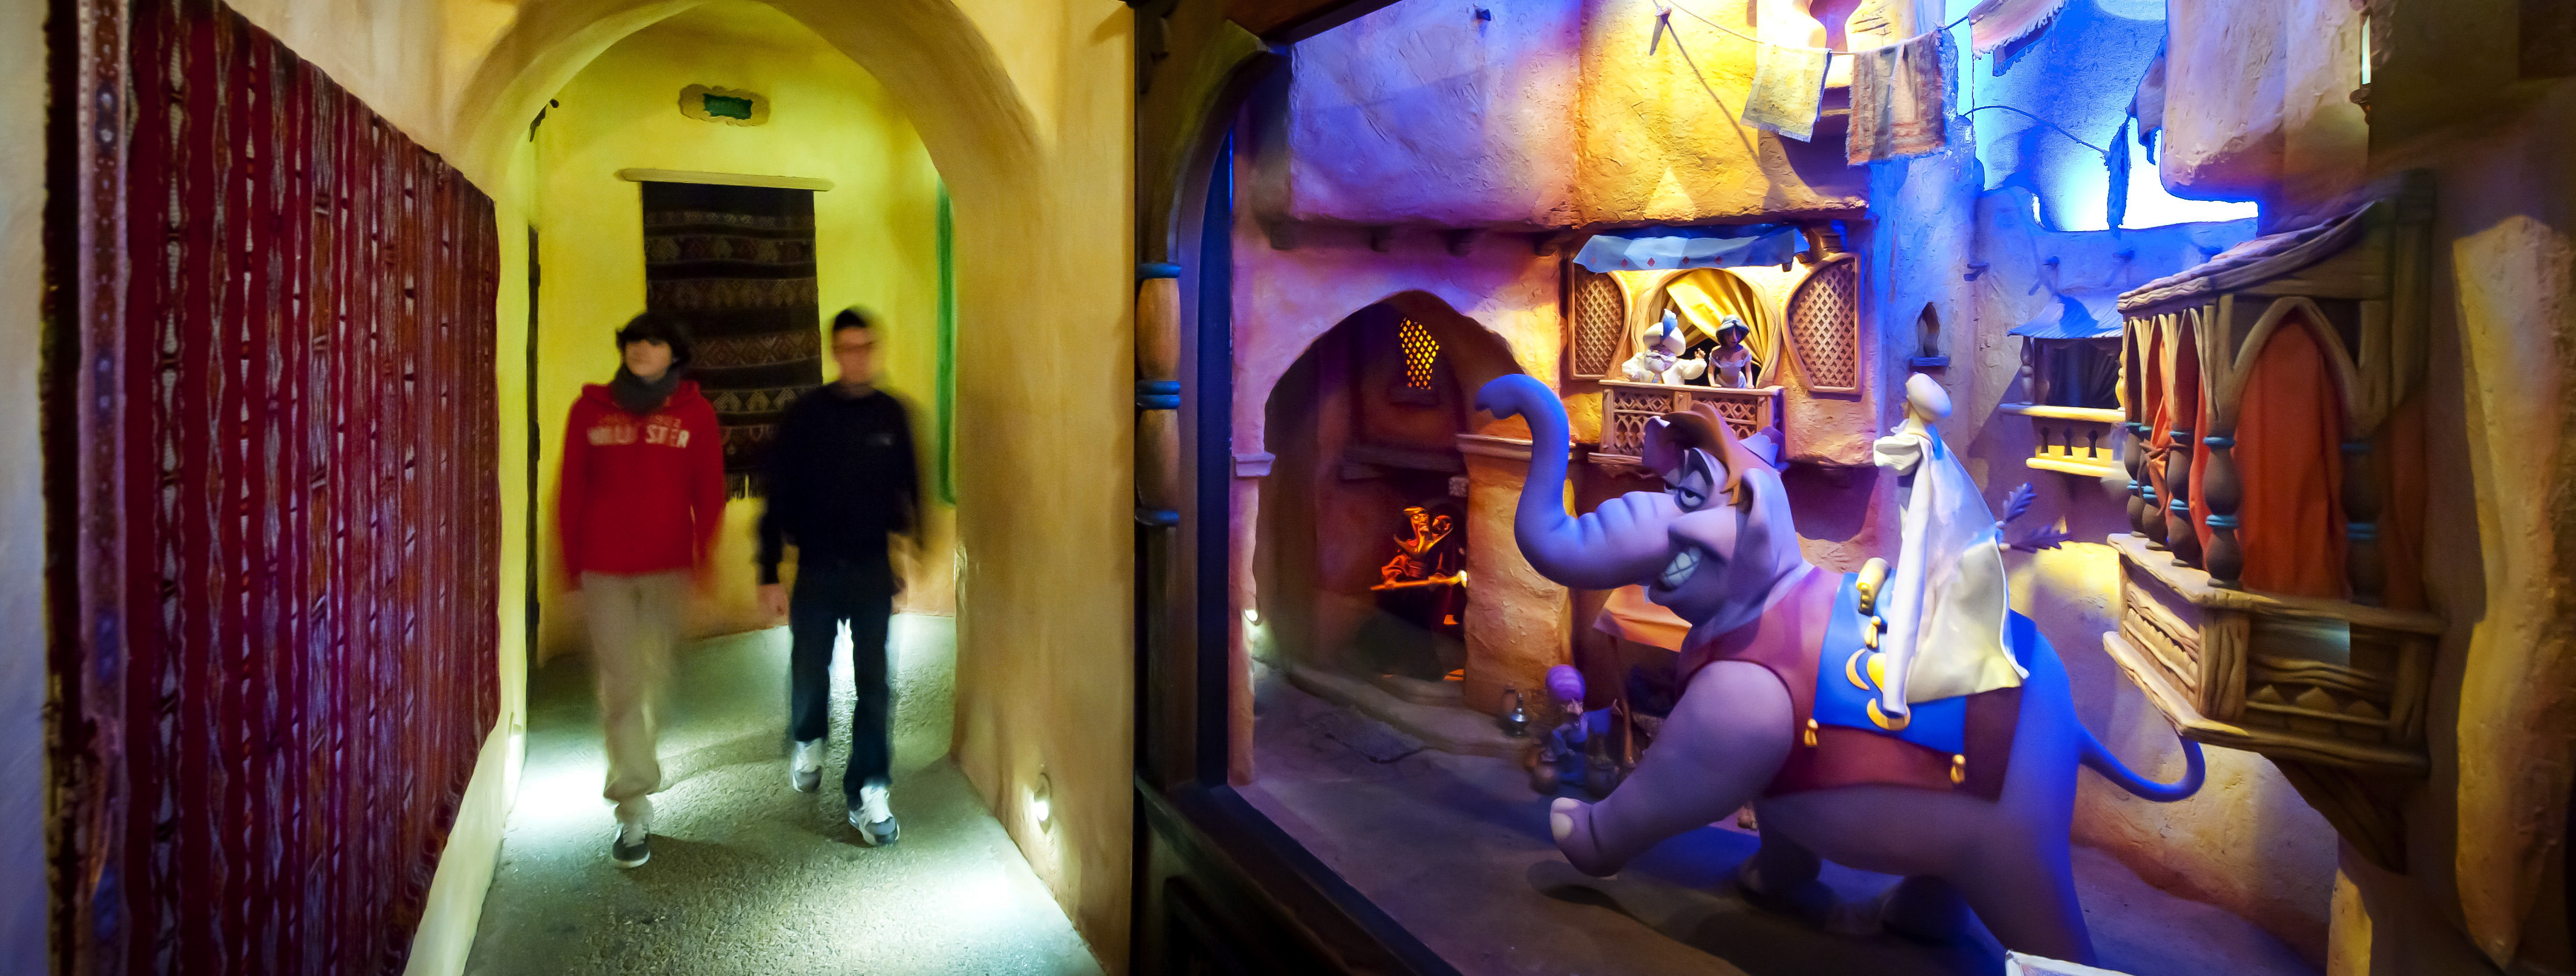 Auf Aladdin’s Spuren im Disneyland Paris